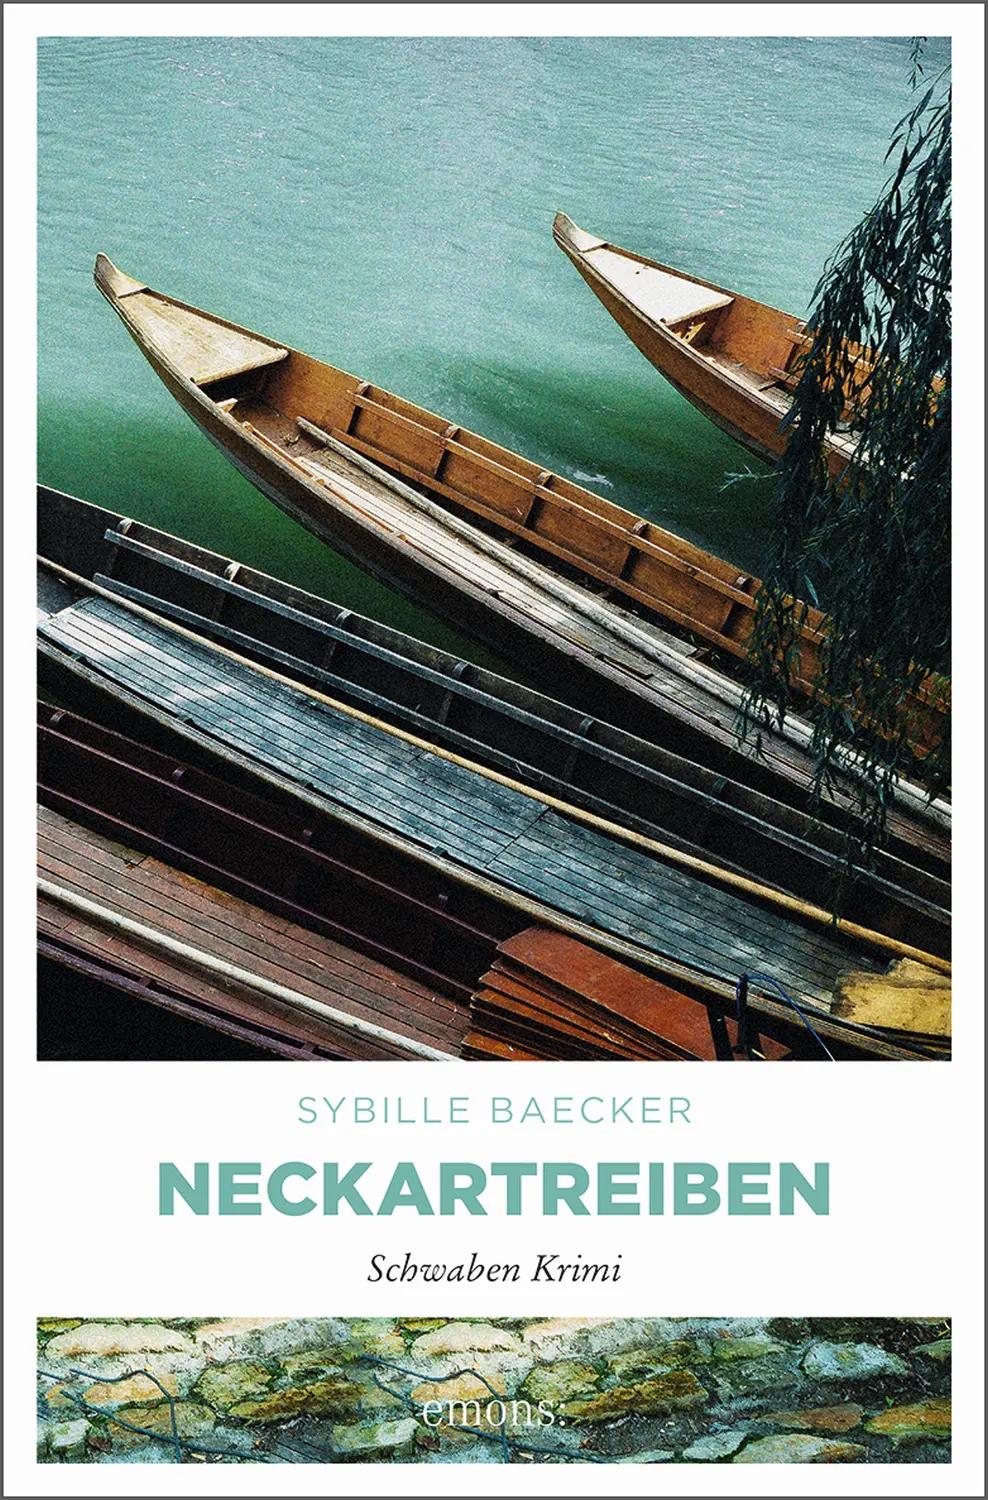 Cover of a book- Neckartreiben